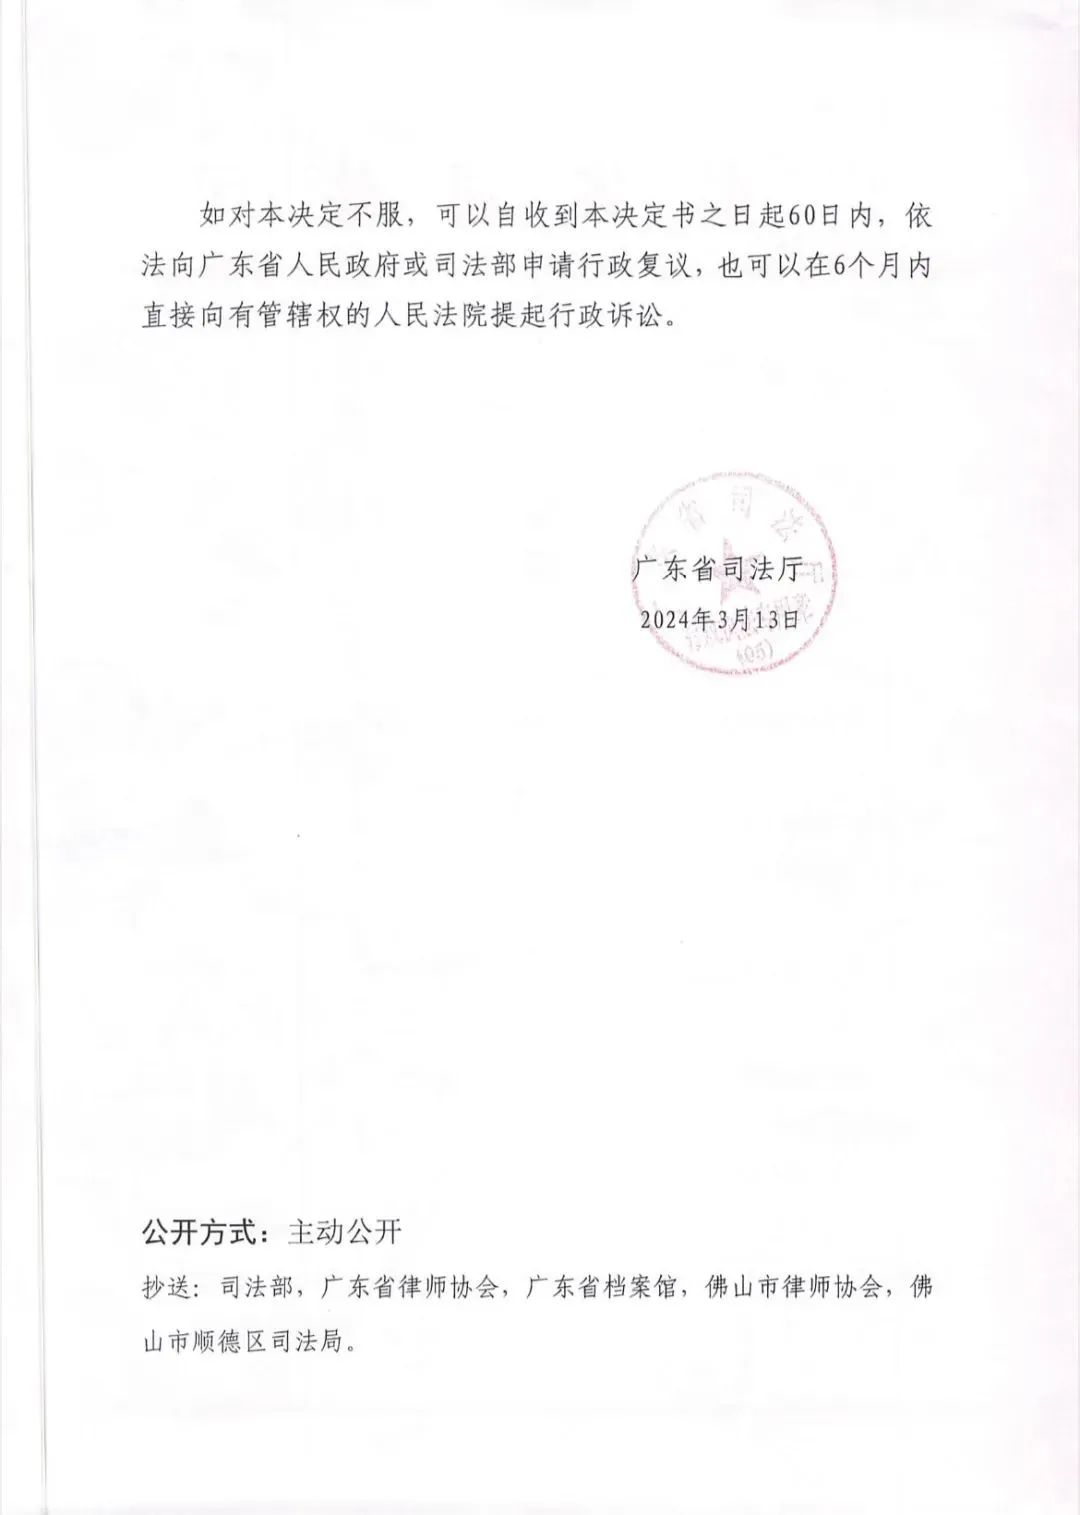 隆安新闻丨北京市隆安（顺德）律师事务所更名公告